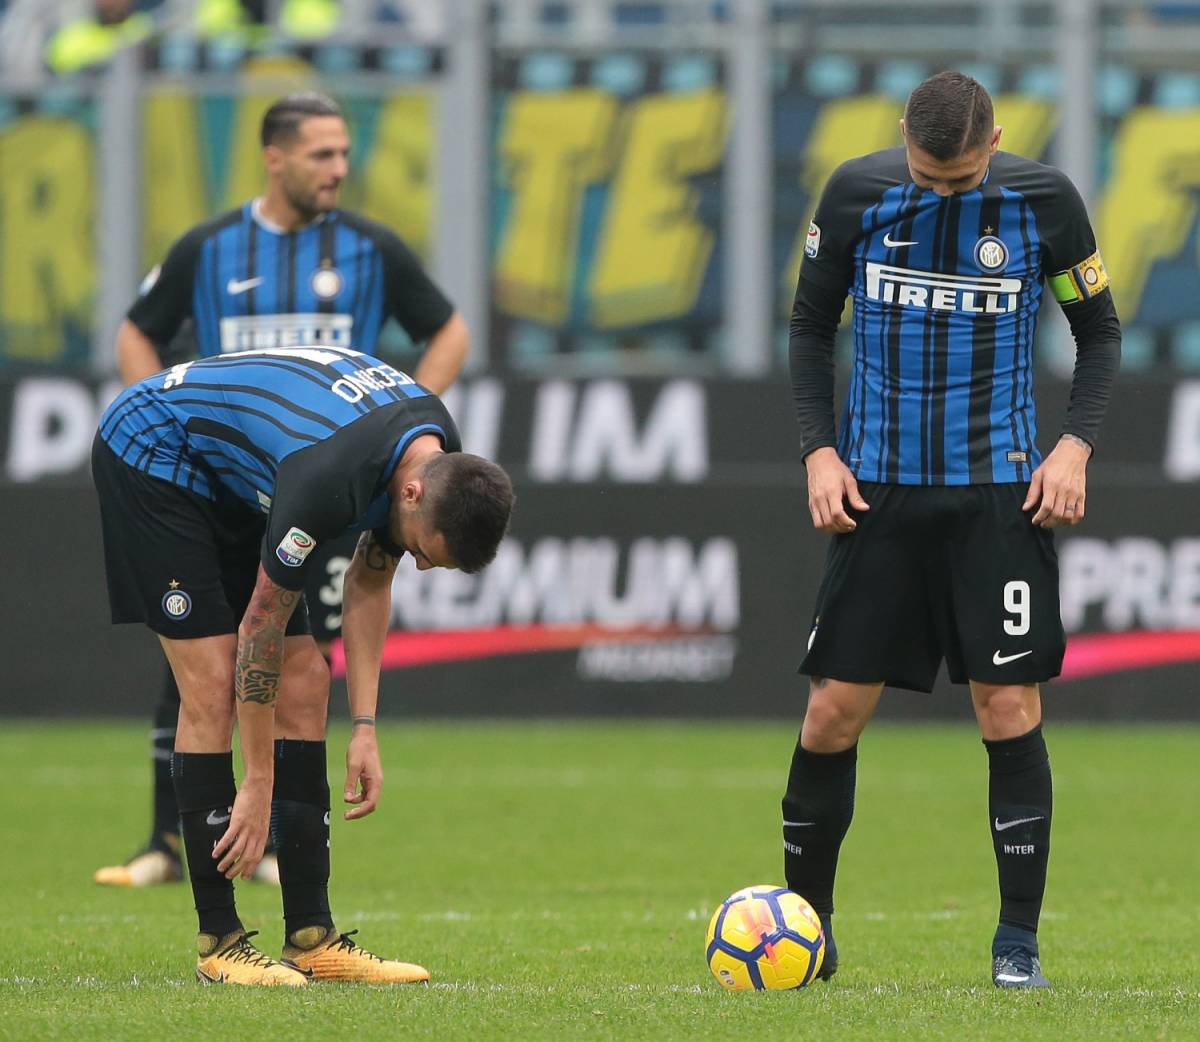 L'Inter sbatte sul Torino: finisce 1-1 al Meazza